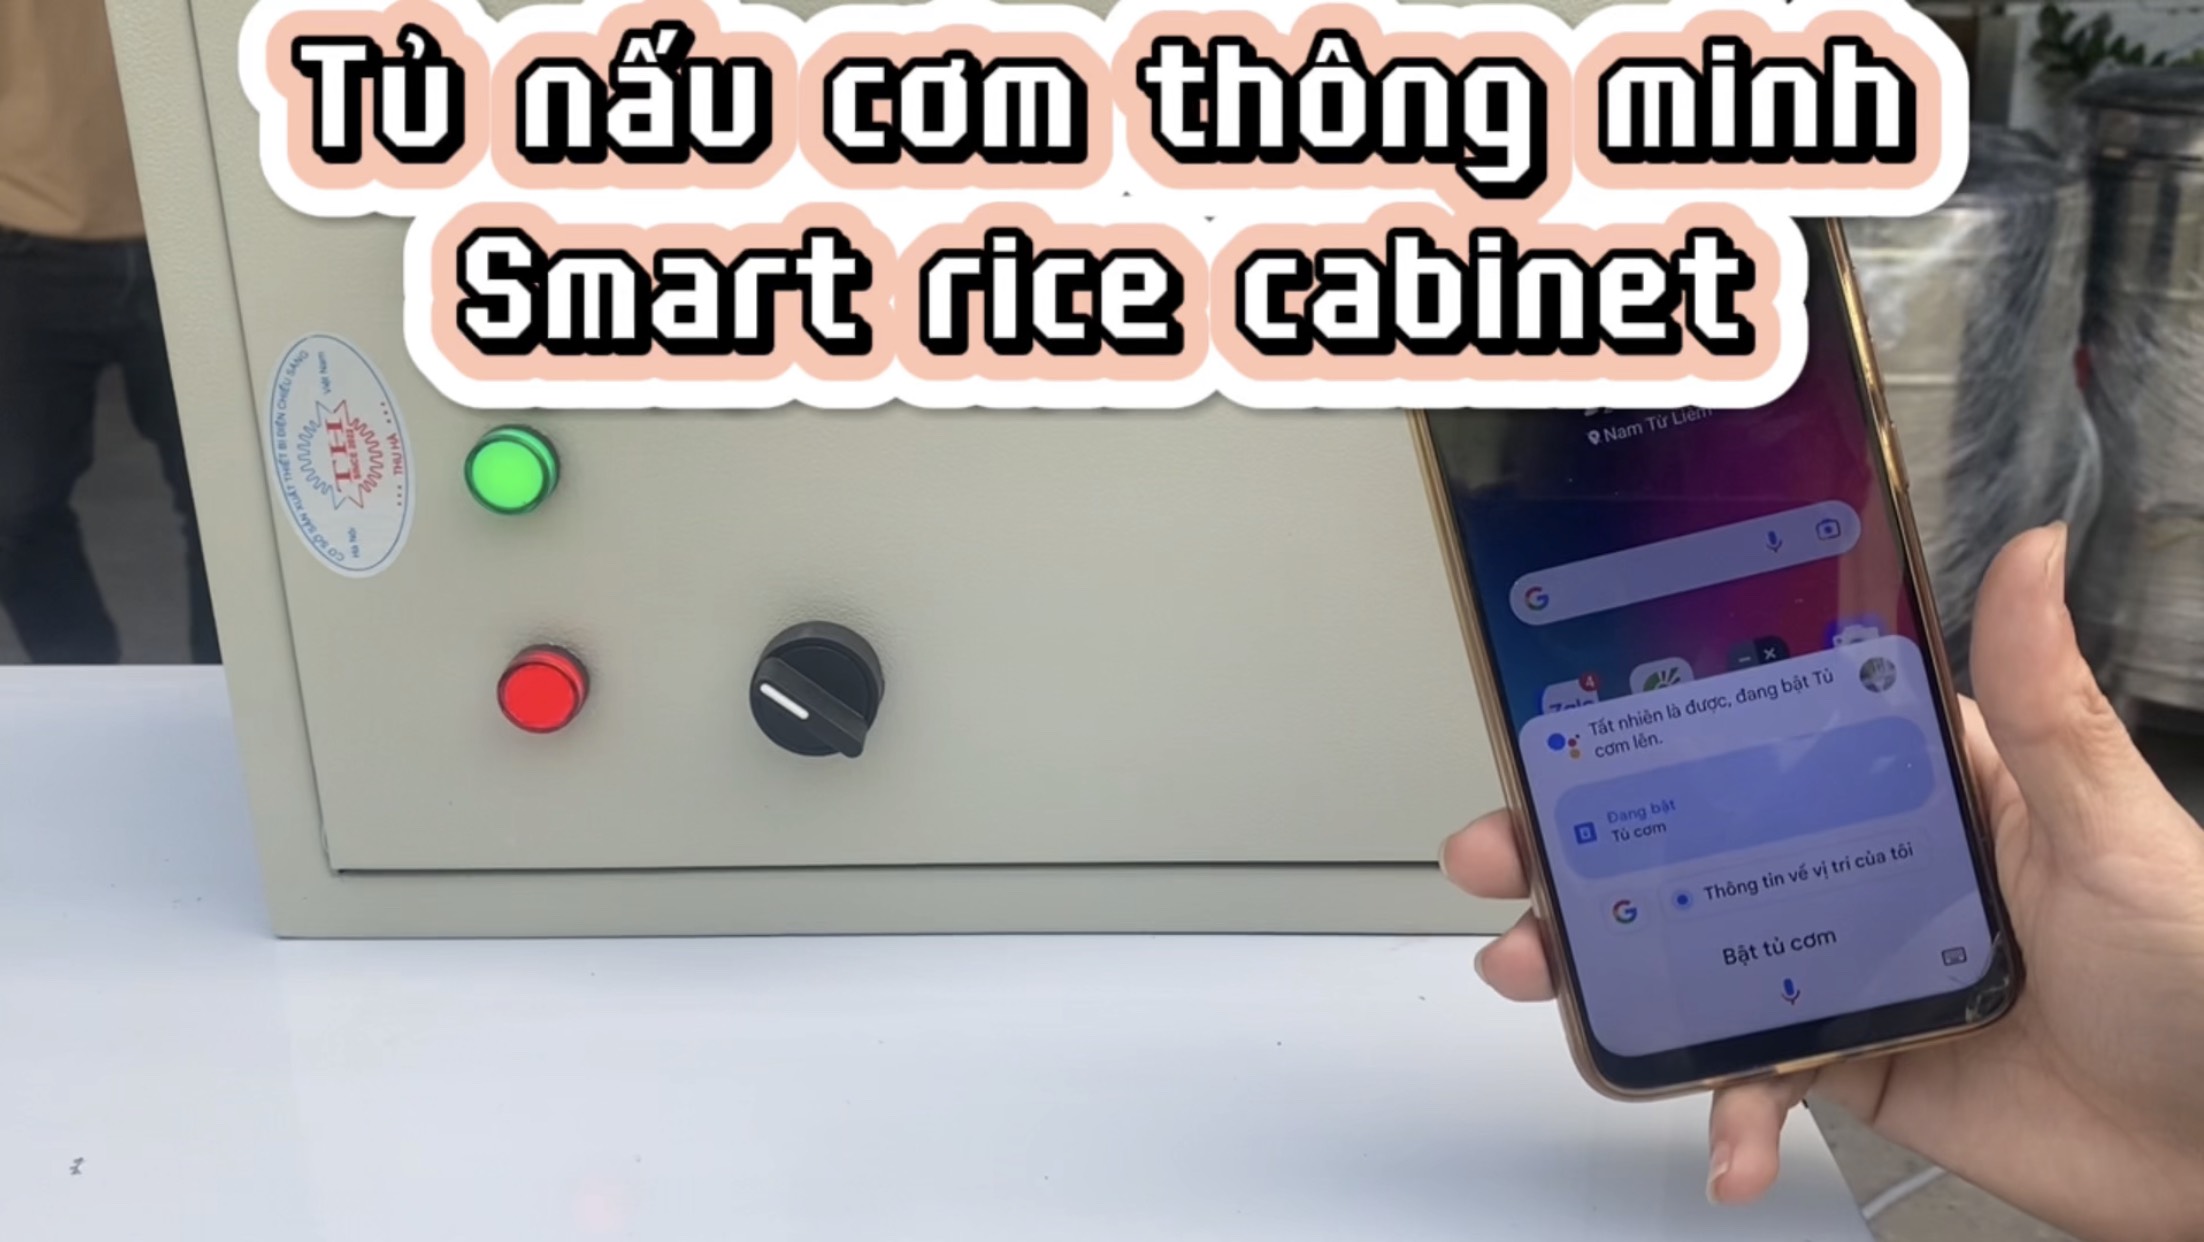 Tủ nấu cơm thông minh - Smart rice cabinet